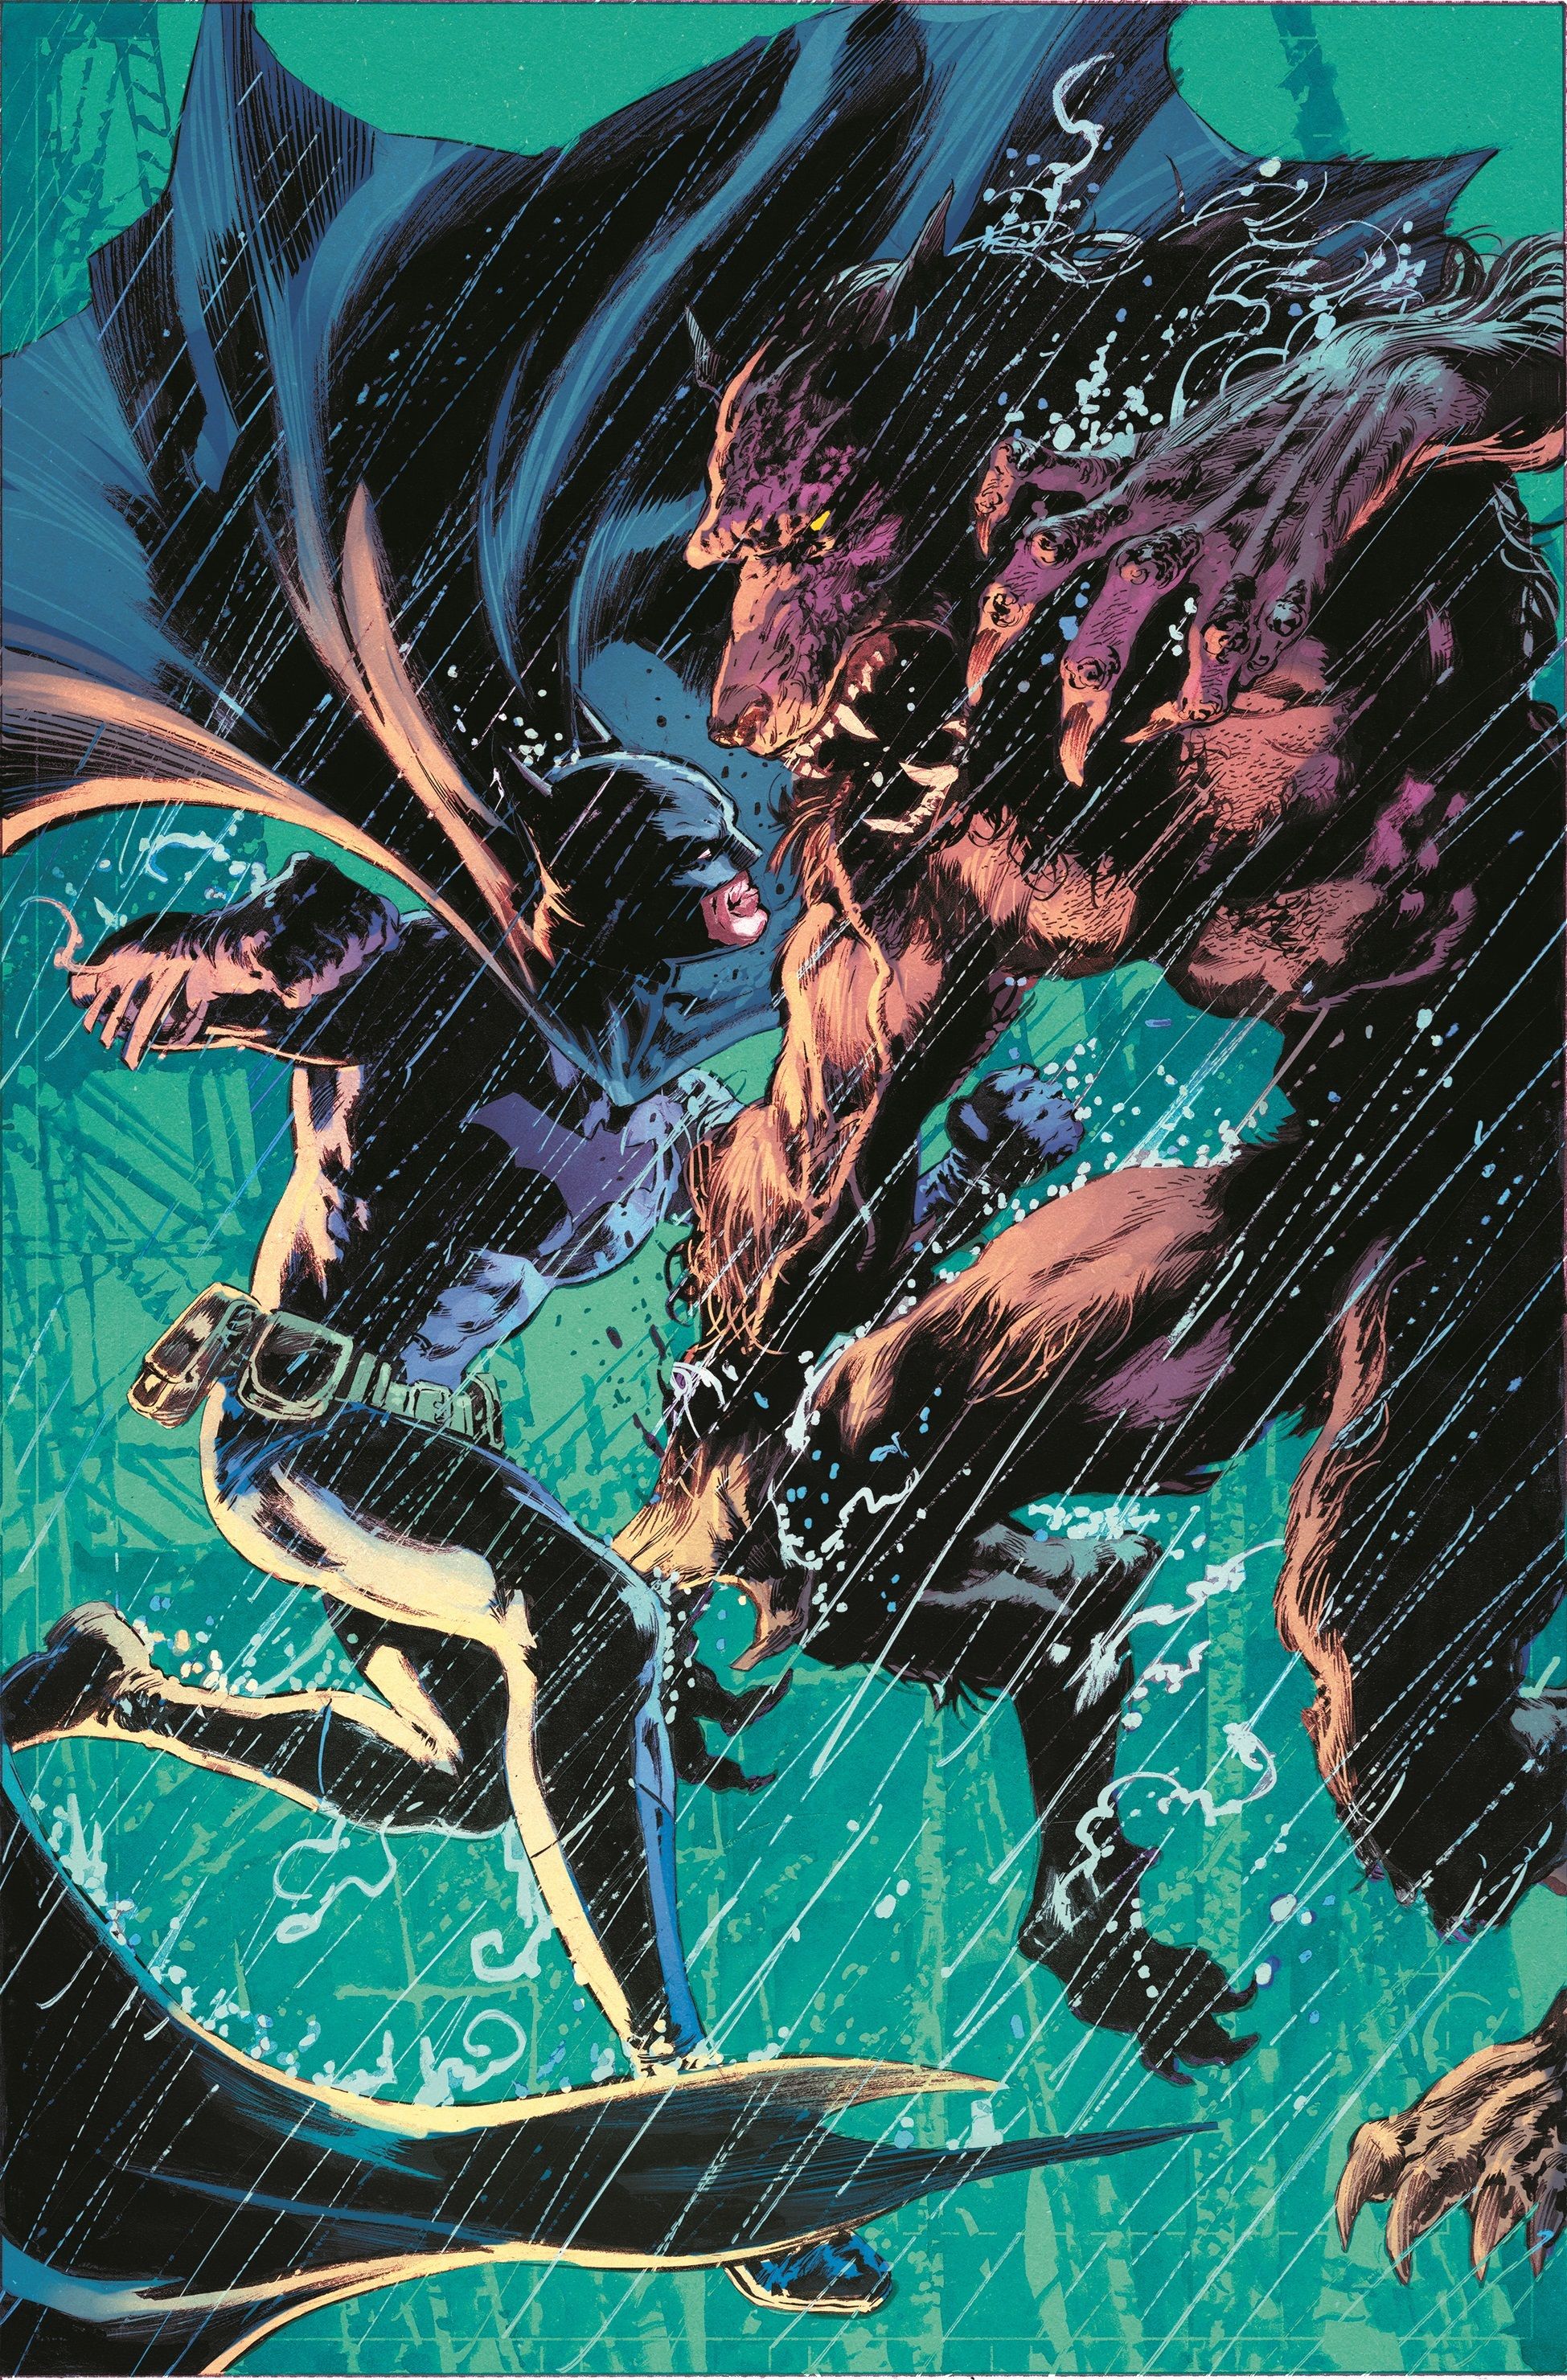 Capa da versão Perkins do Batman Full Moon 1: Batman saltando para a frente para lutar contra um lobisomem.